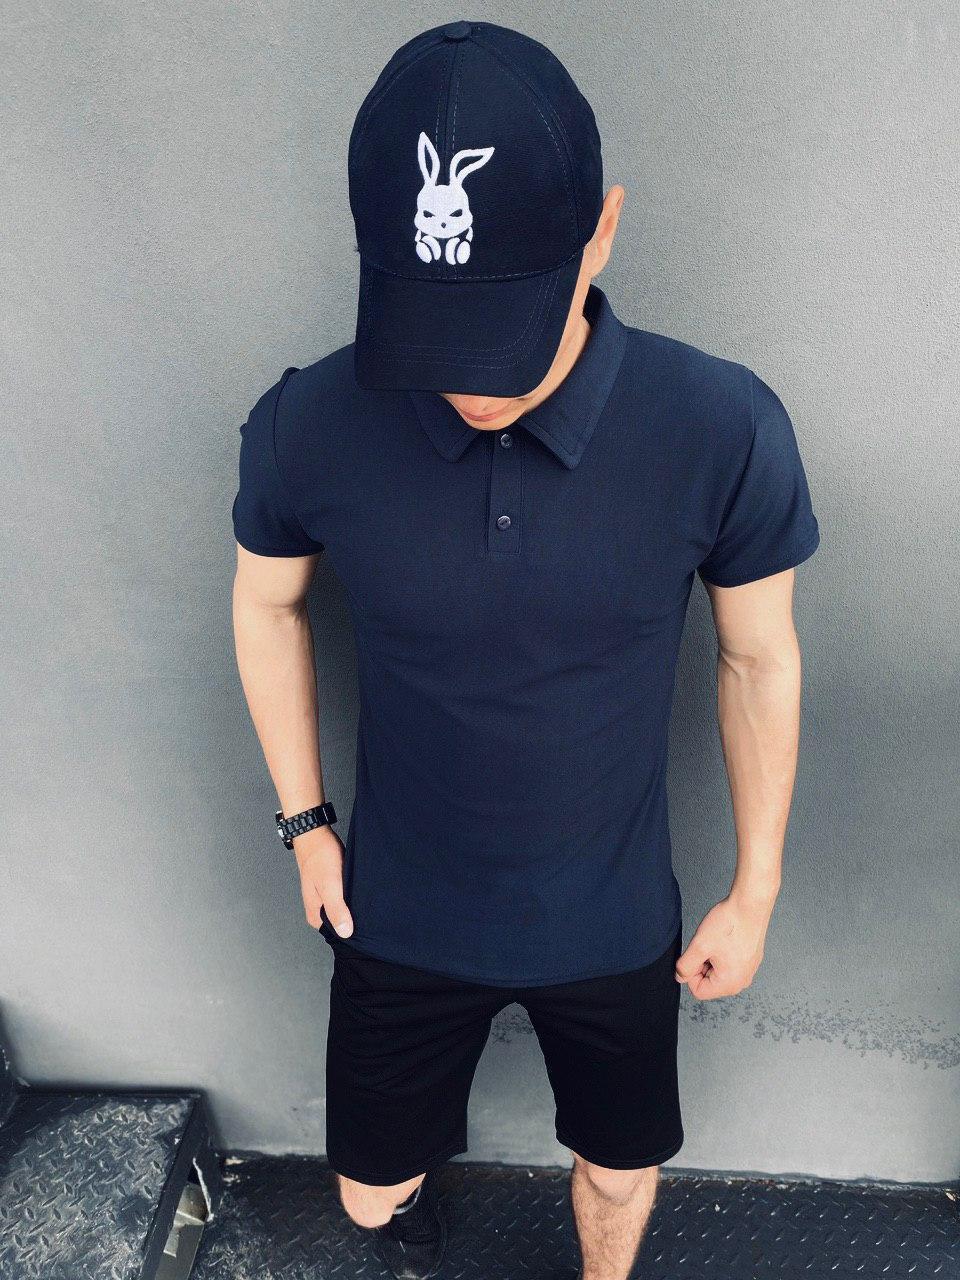 Мужской летний костюм Intruder LaCosta футболка поло синяя шорты и кепка черные S (001SAG 1052)